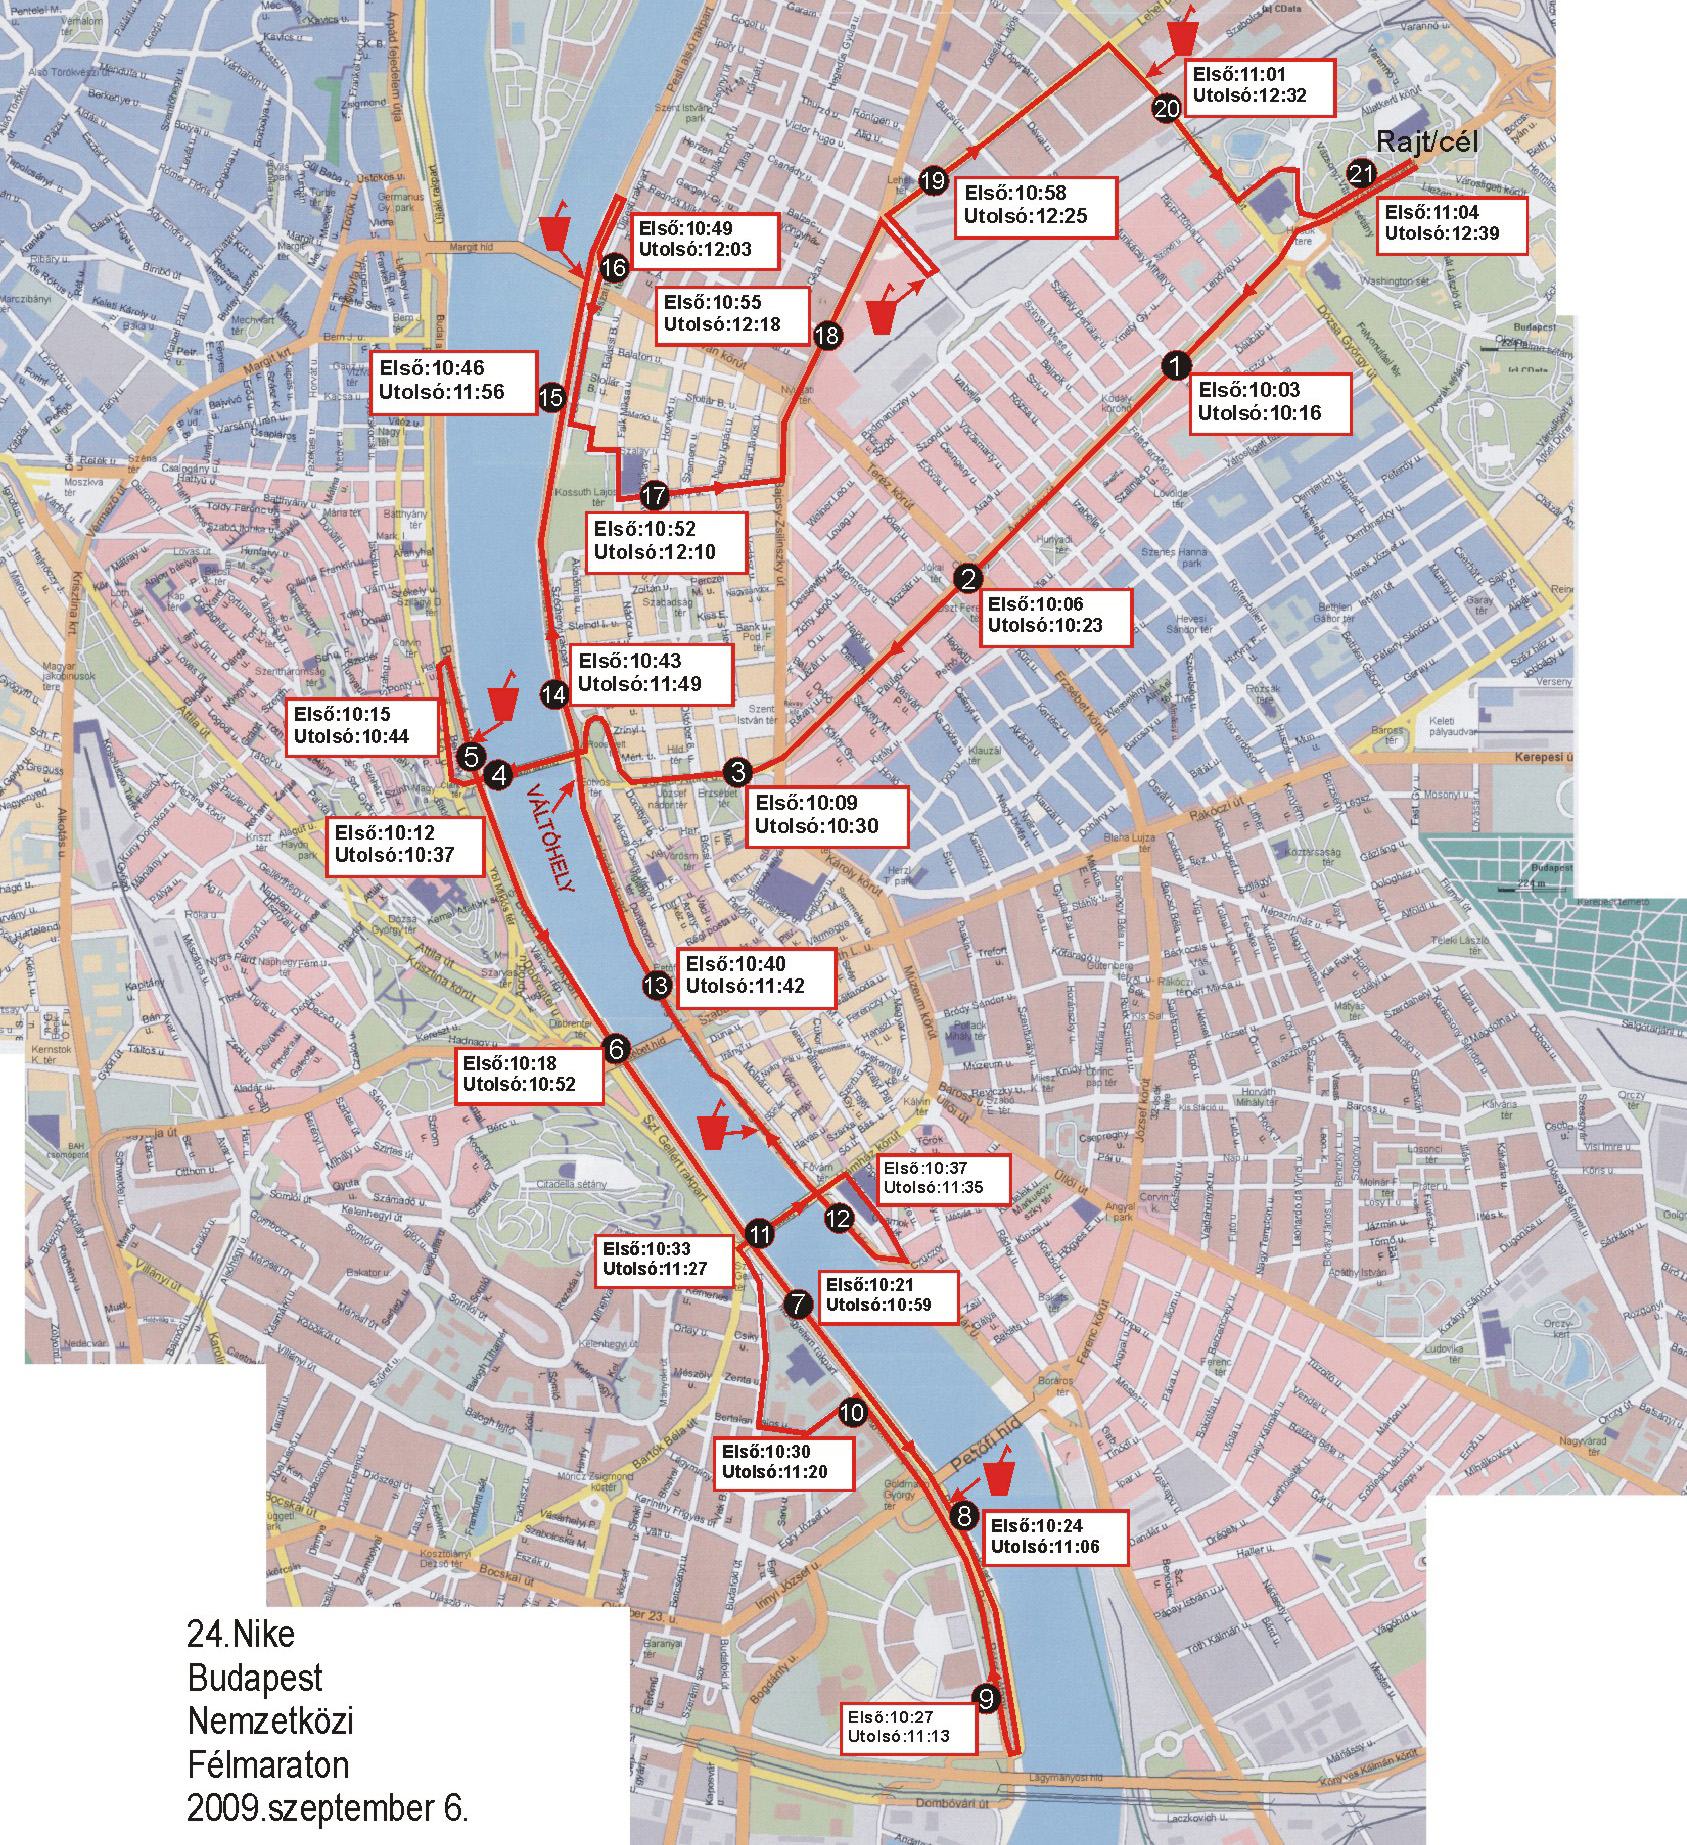 budapest térkép nyomtatható 24. Budapest Nemzetközi Félmaraton, Térkép   Futanet.hu budapest térkép nyomtatható